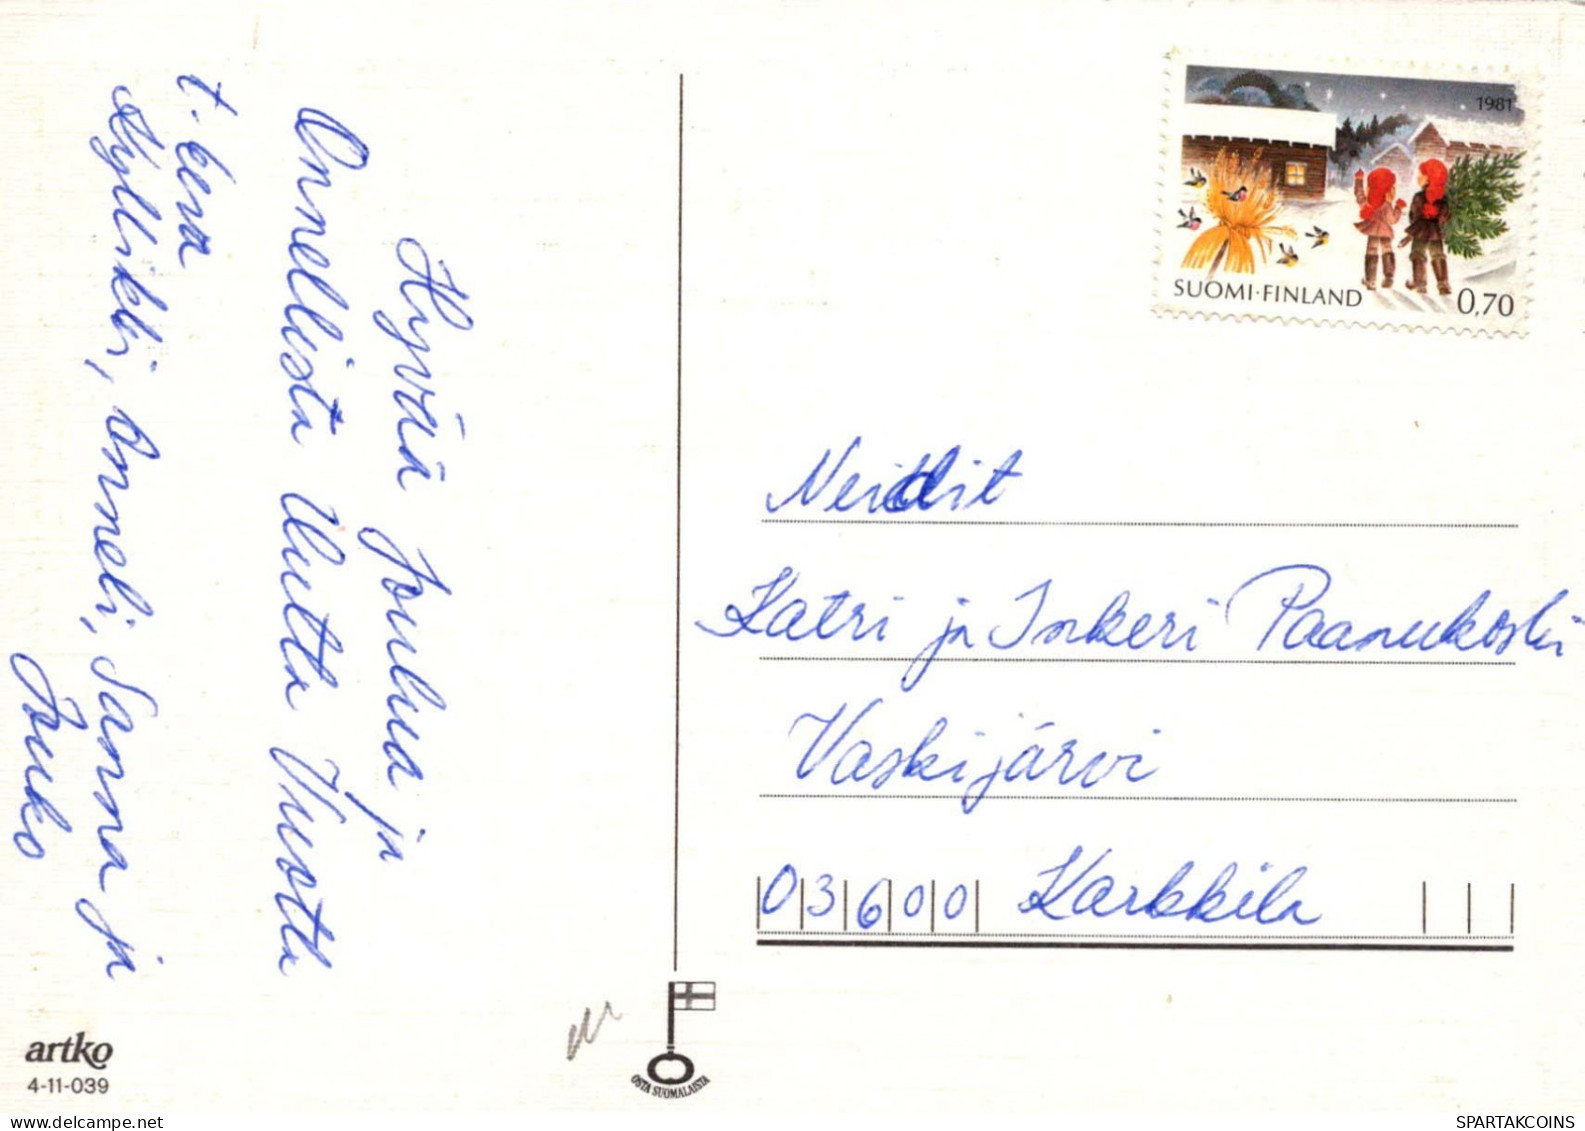 ANGE Noël Bébé JÉSUS Vintage Carte Postale CPSM #PBP376.FR - Anges